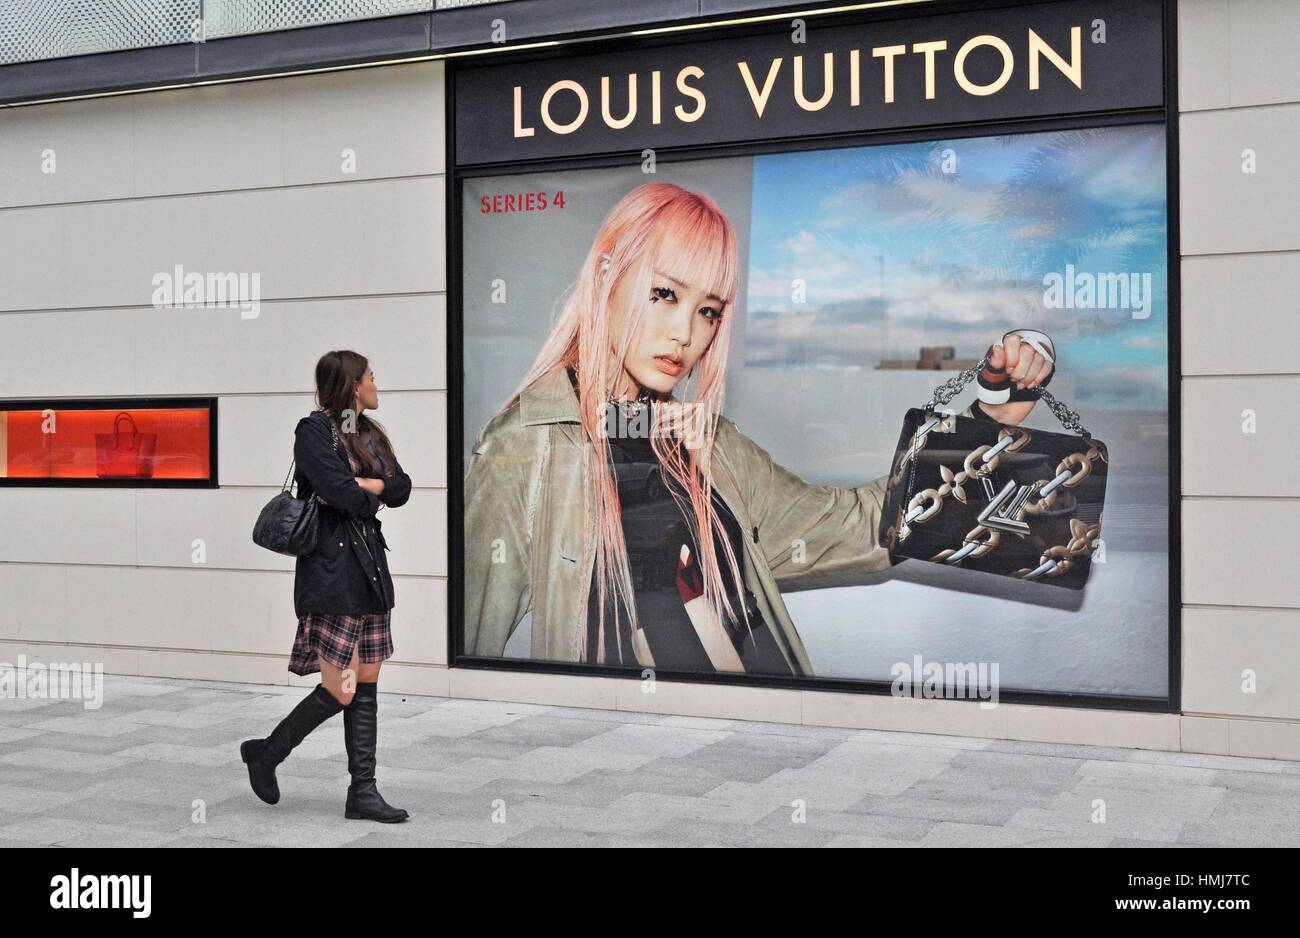 Louis Vuitton Ads Poster G337592 